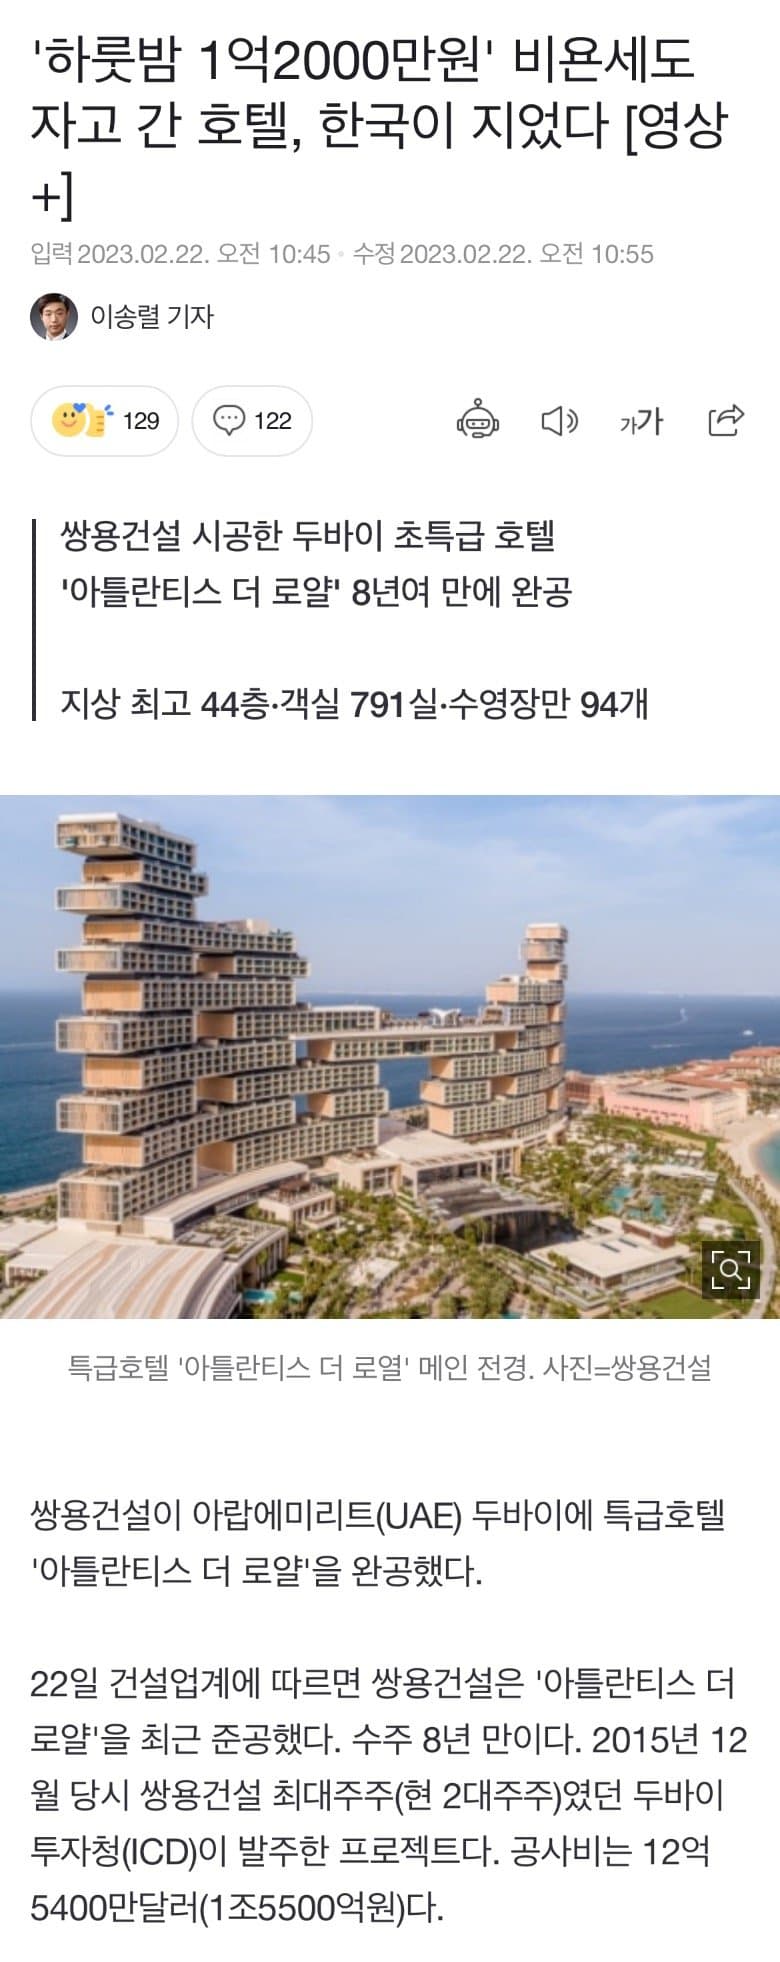 하룻밤 1억 2천만원' 비욘세도 자고 간 호텔, 한국이 지었다 - 기타 국내 드라마 갤러리